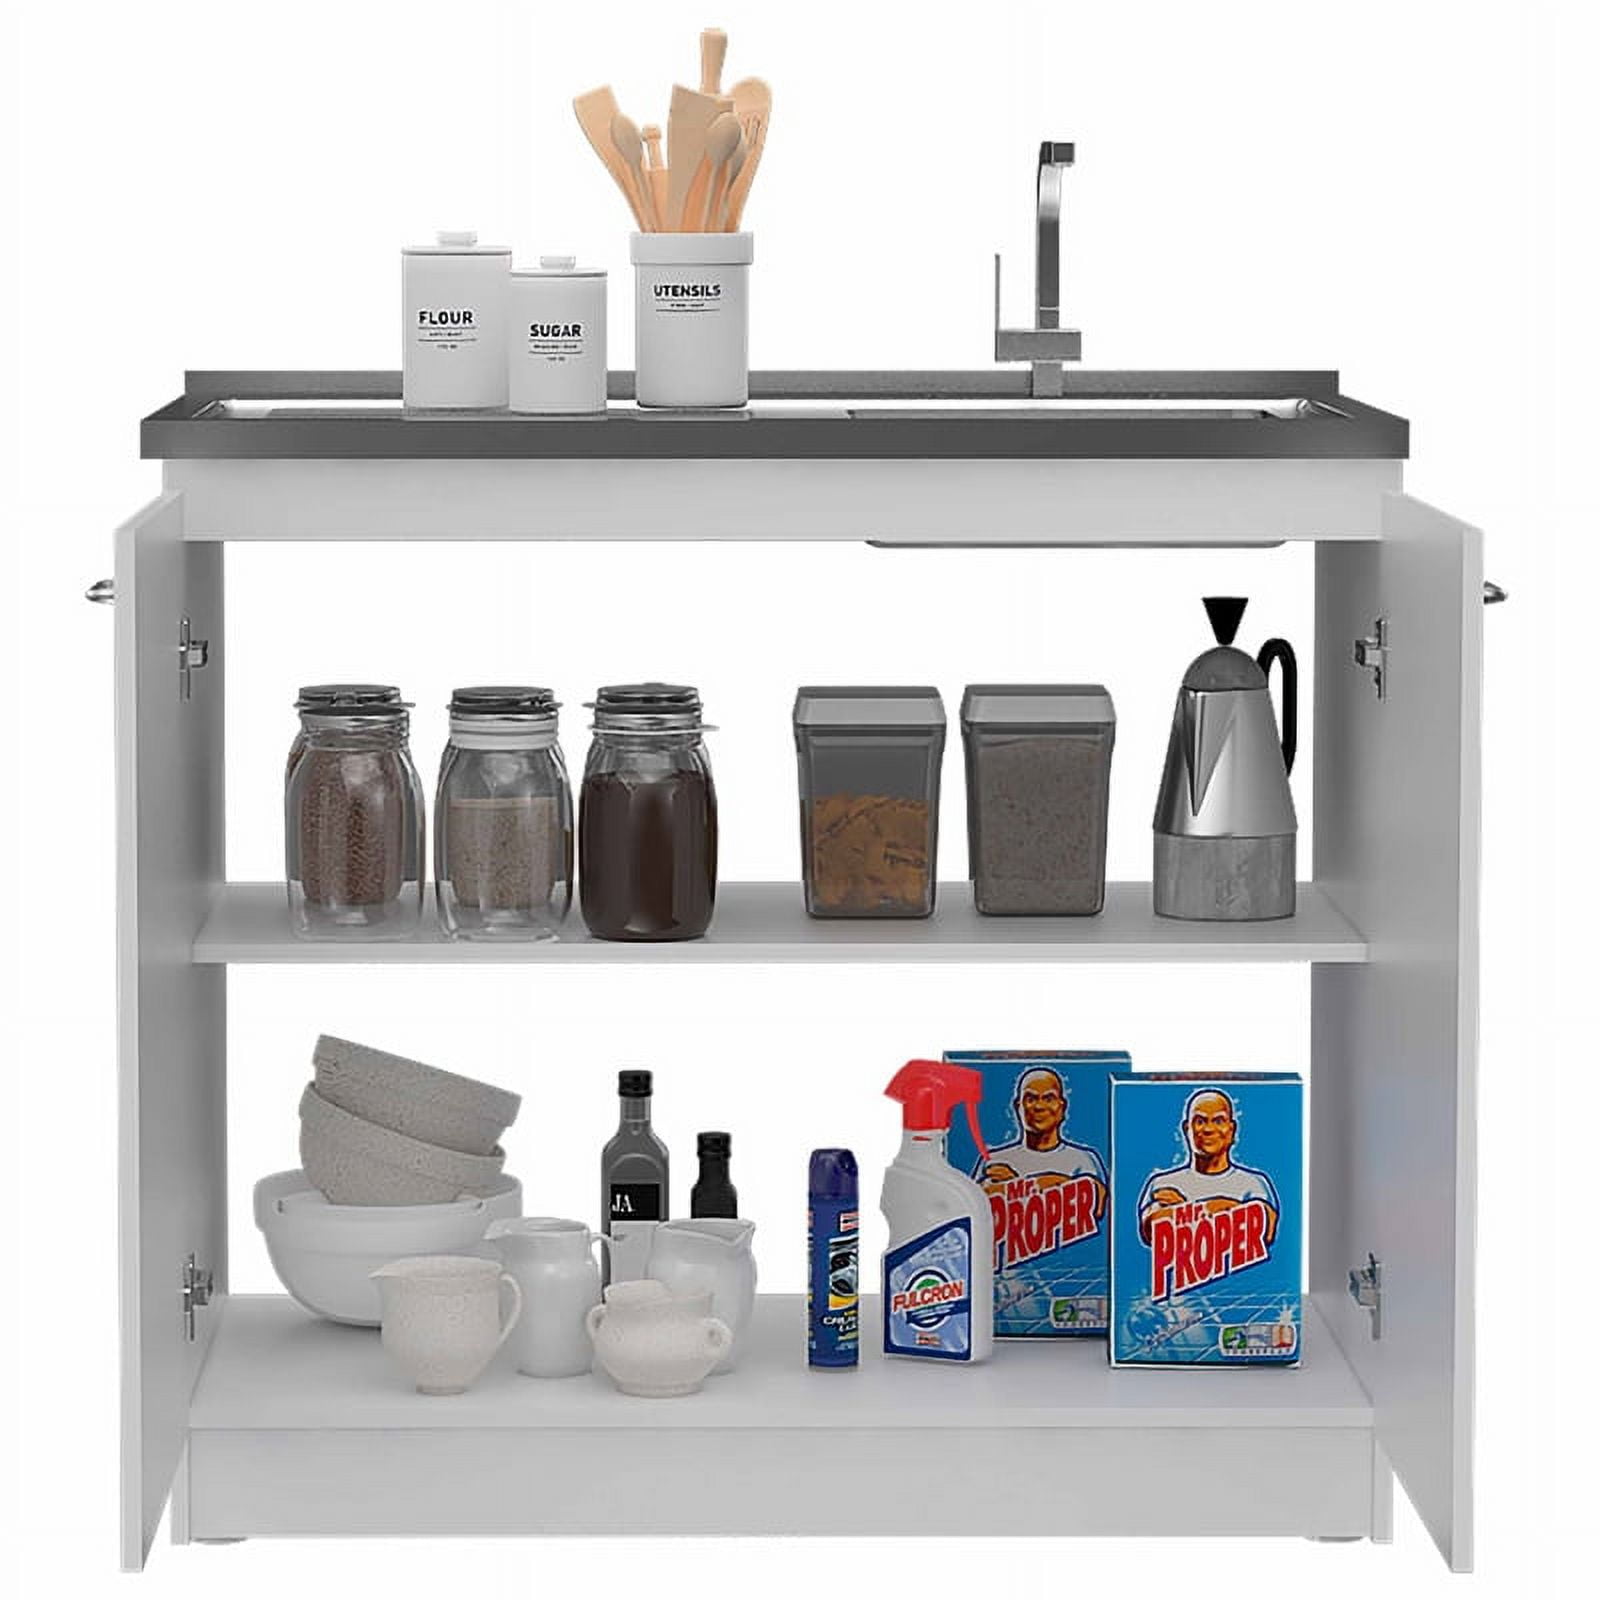 Mueble de cocina con fregadero y encimera de aluminio de color blanco  Napoles TuHome